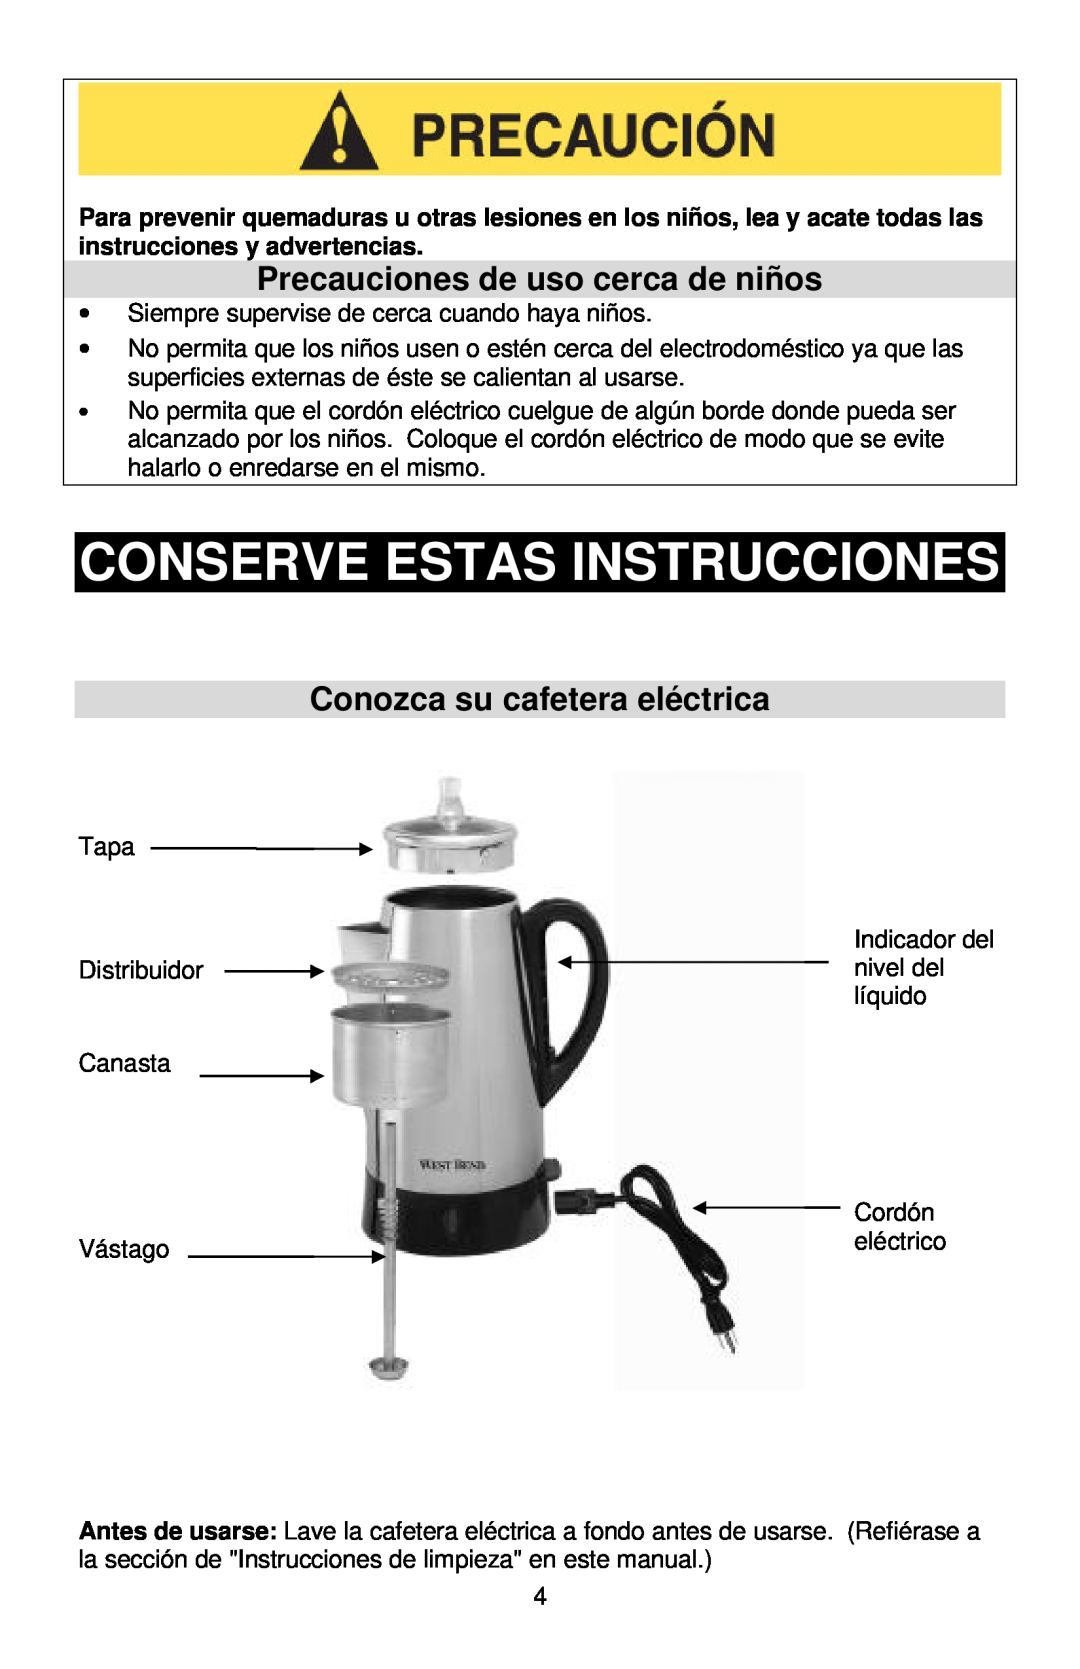 West Bend Coffeemaker Conserve Estas Instrucciones, Precauciones de uso cerca de niños, Conozca su cafetera eléctrica 